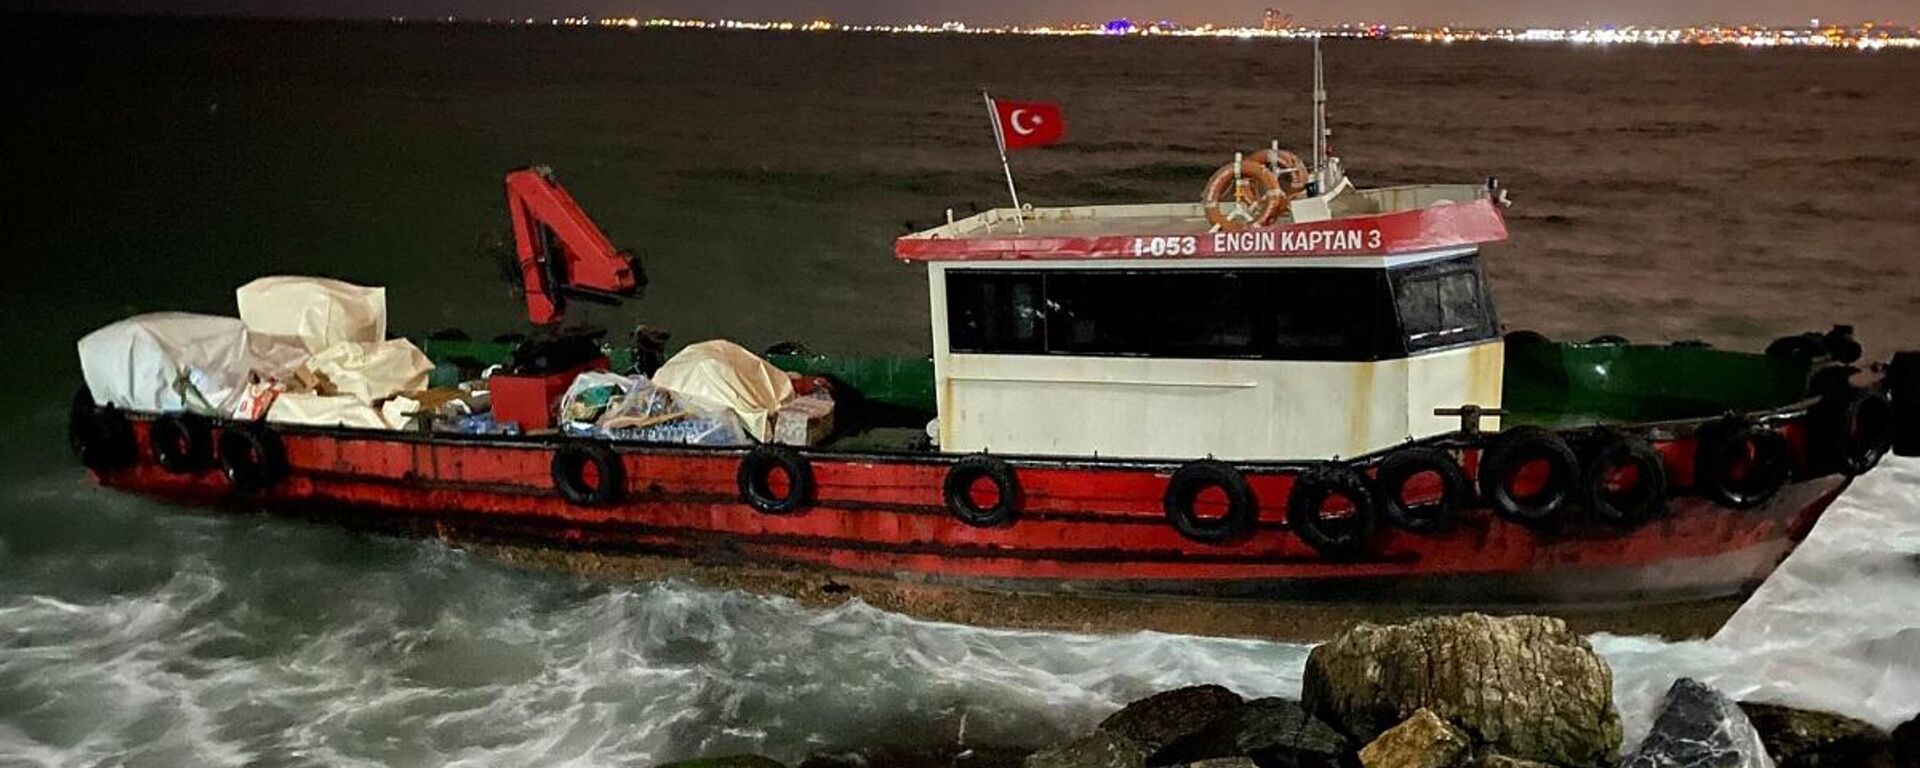 Kadıköy'ün Moda sahilinde şiddetli rüzgar nedeniyle balıkçı teknesi karaya oturdu. Teknede mahsur kalan 2 kişi itfaiye ekipleri tarafından kurtarıldı. - Sputnik Türkiye, 1920, 28.01.2022